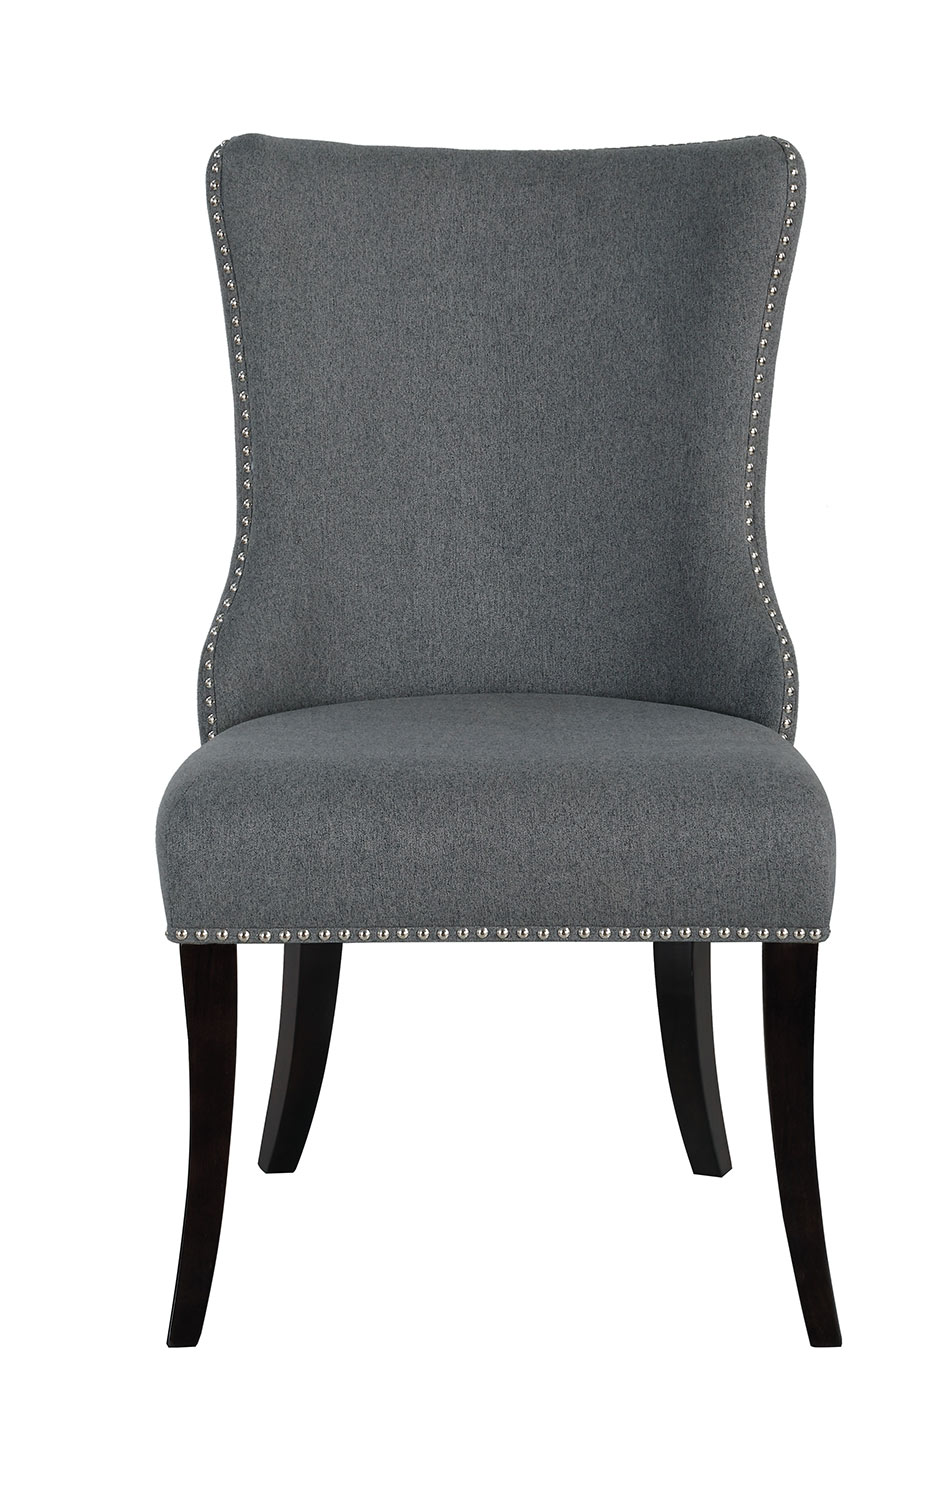 Homelegance Salema Side Chair - Gray - Dark Brown